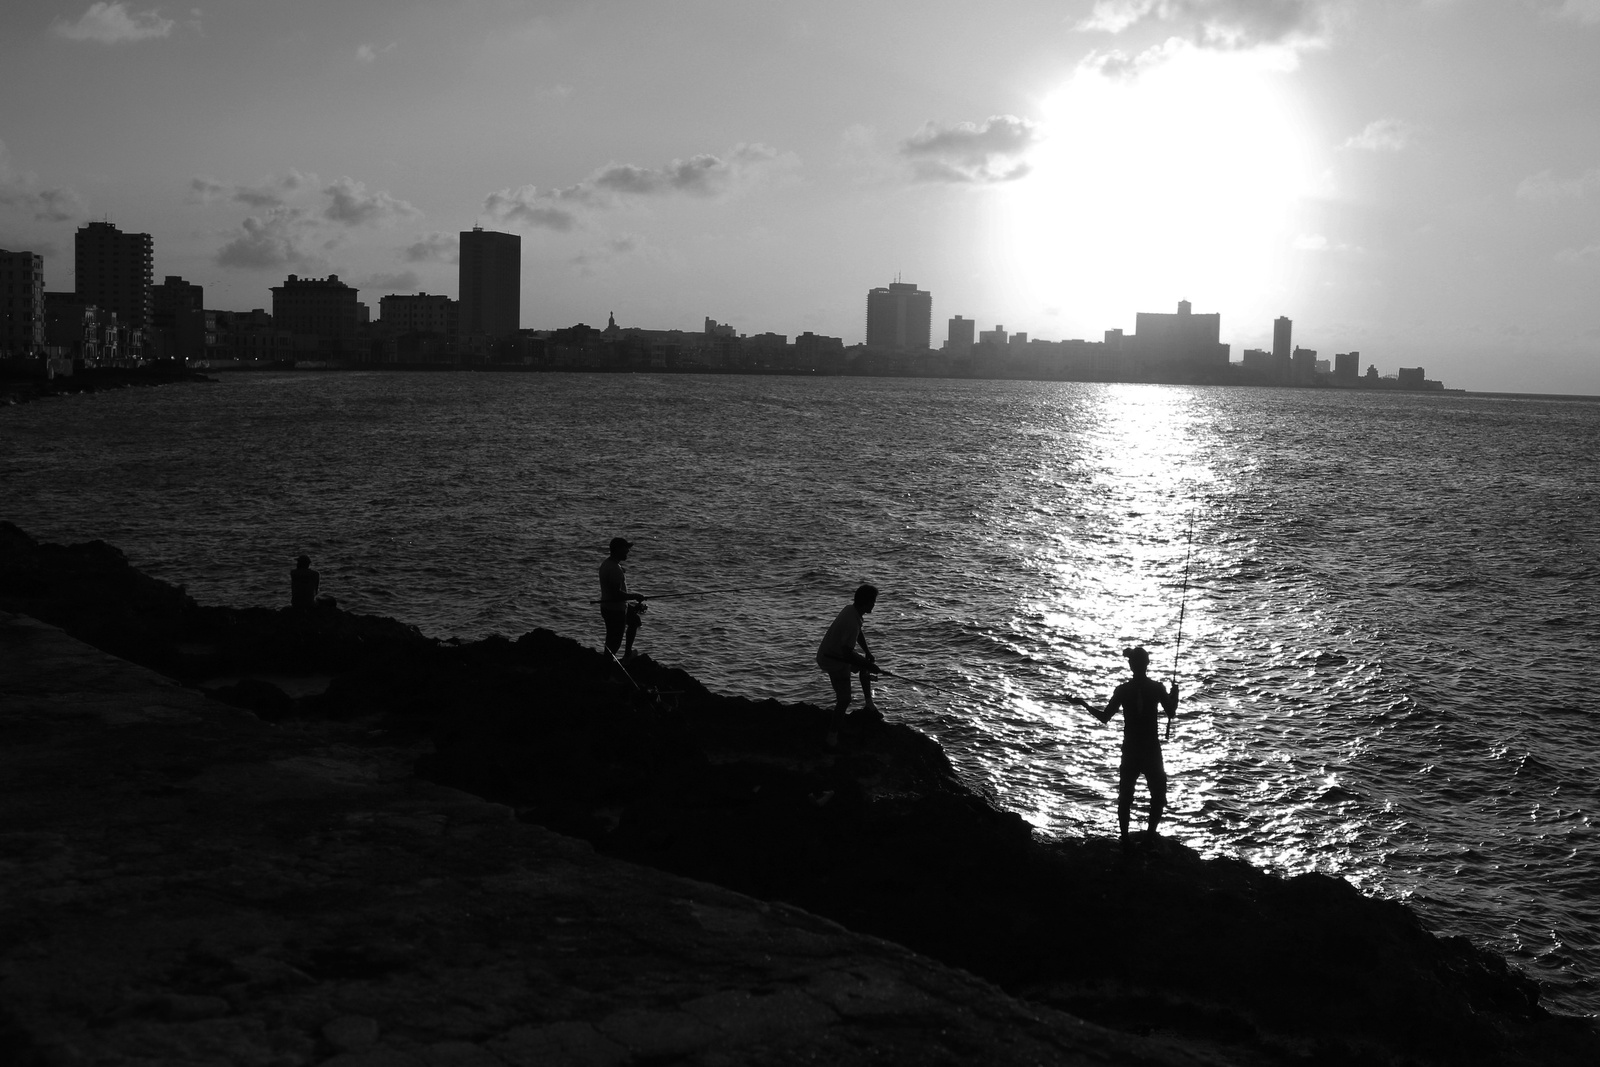 Utolsó pillanatok... Kuba 2015 - Horgászok a Malecón-on